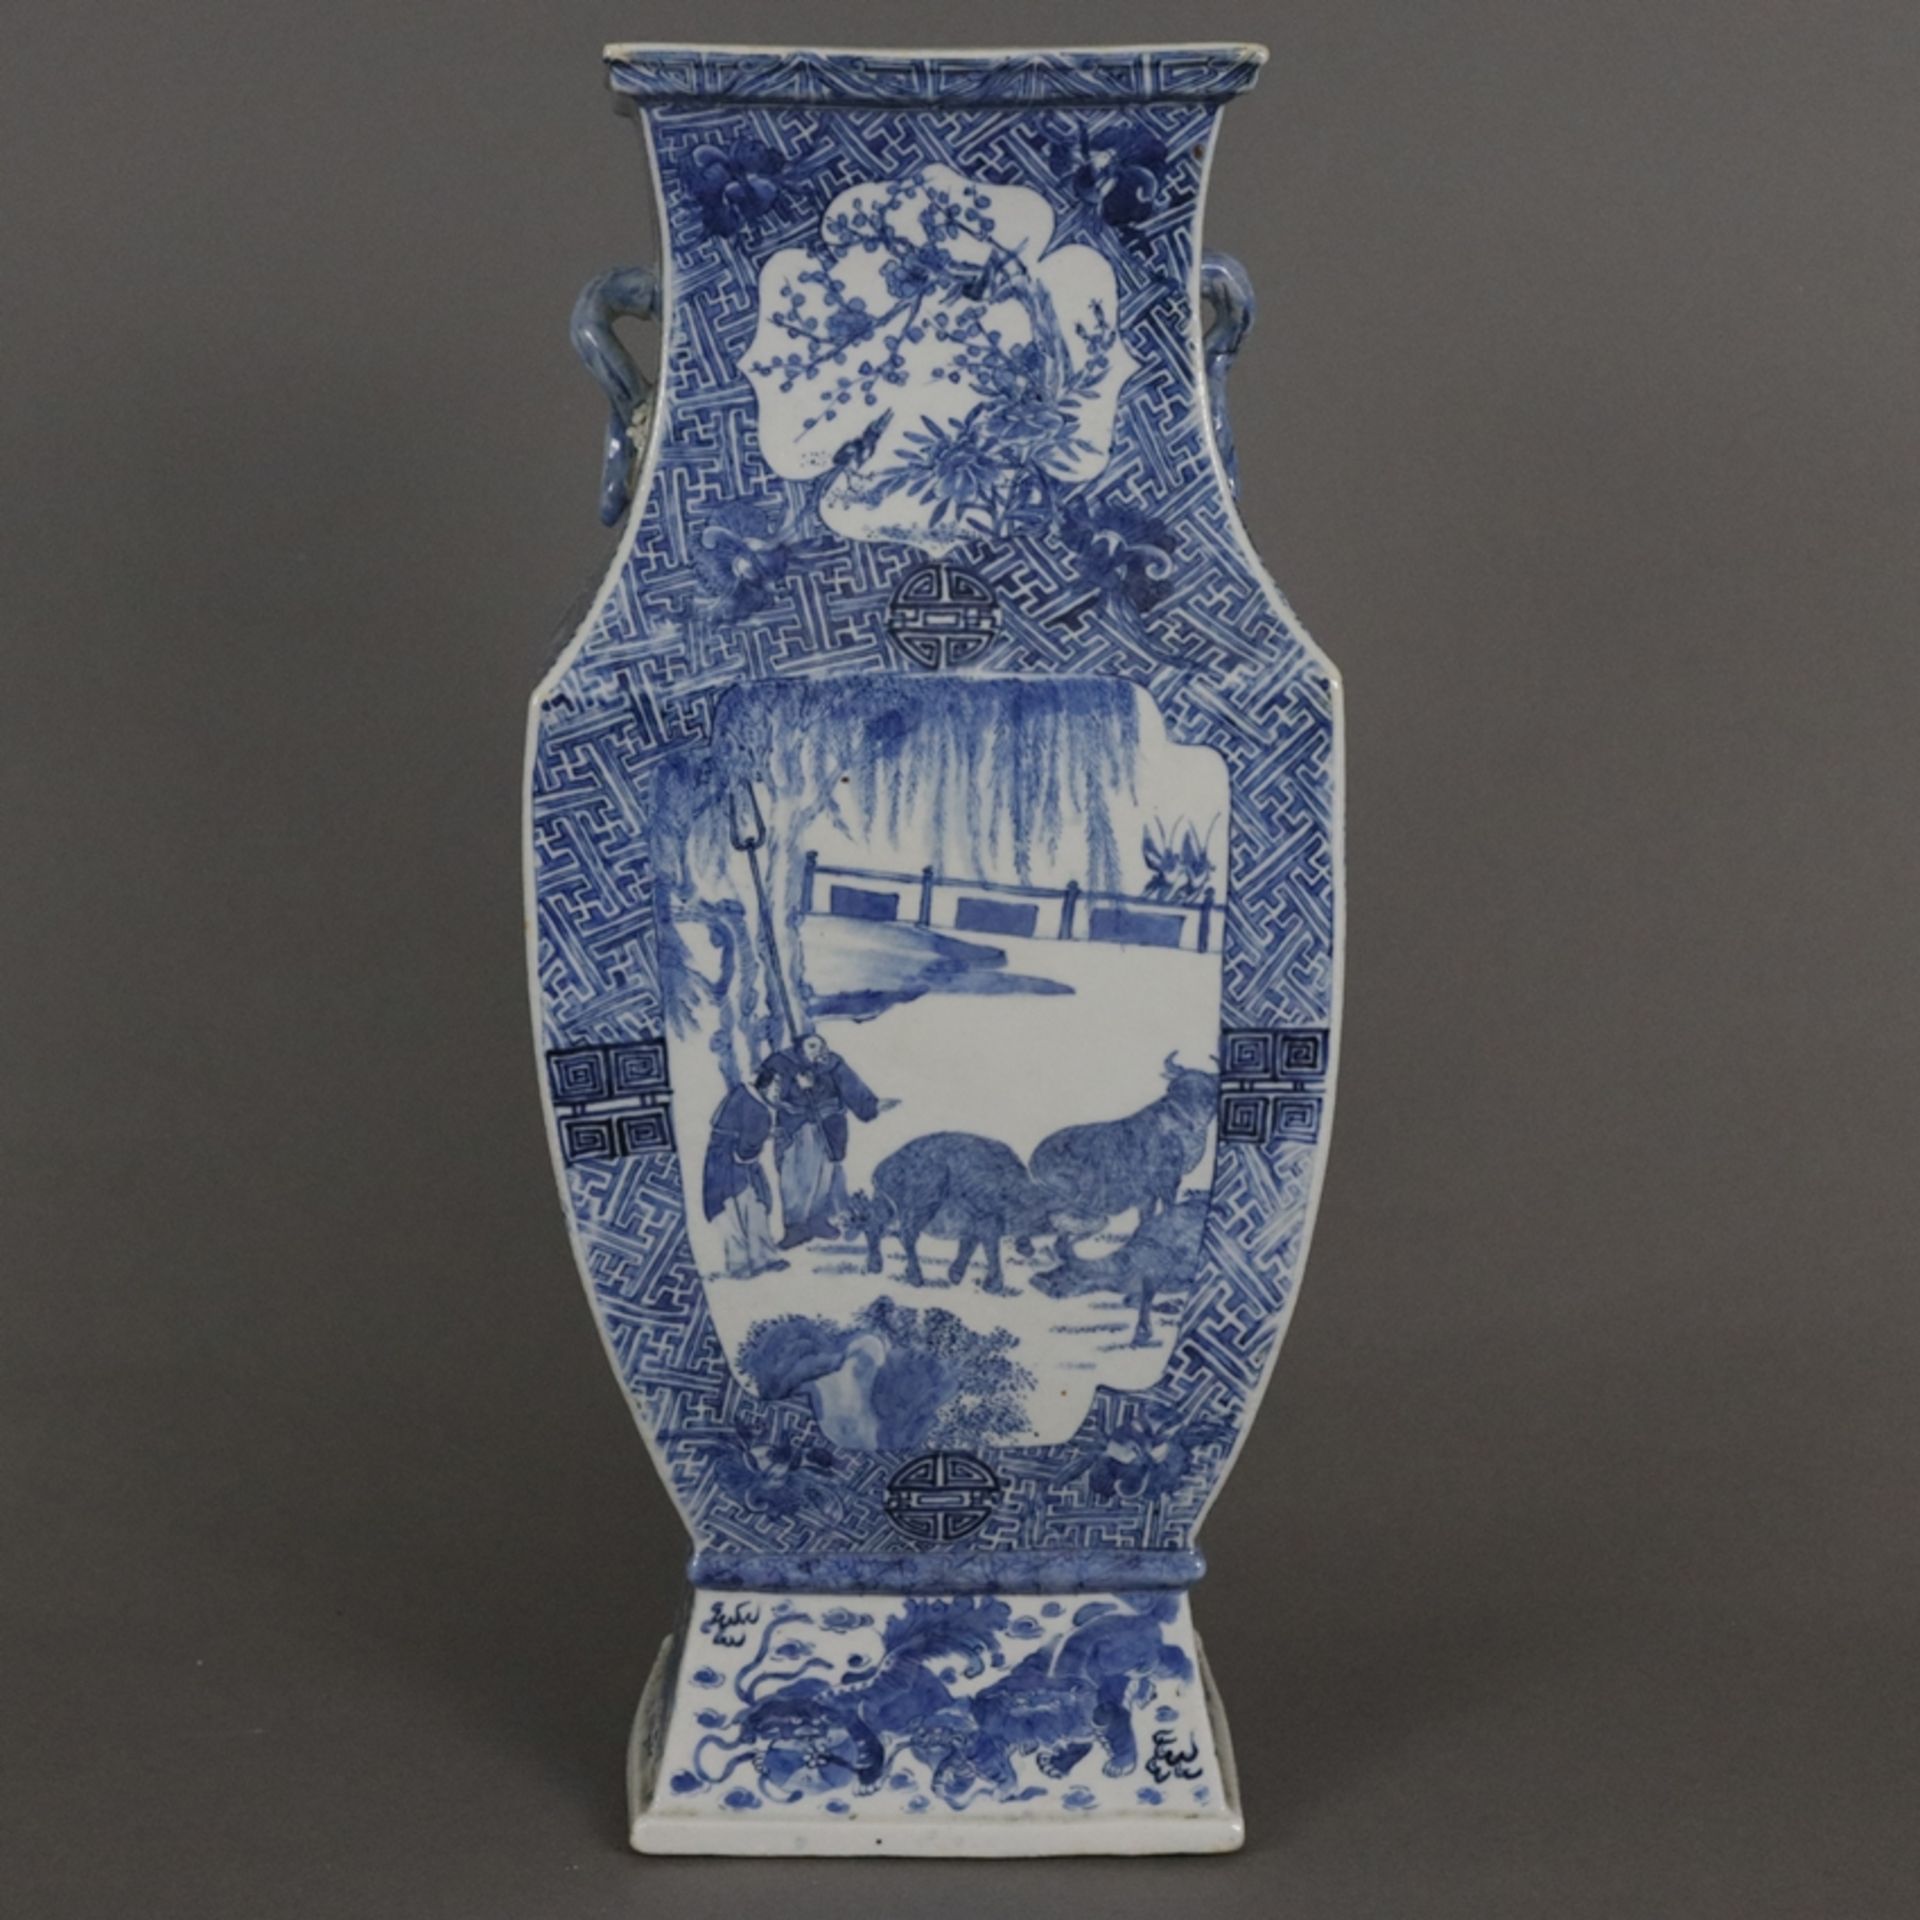 Rechteckige Balustervase - China, späte Qing -Dynastie, Porzellan, gekantete Balusterform auf Socke